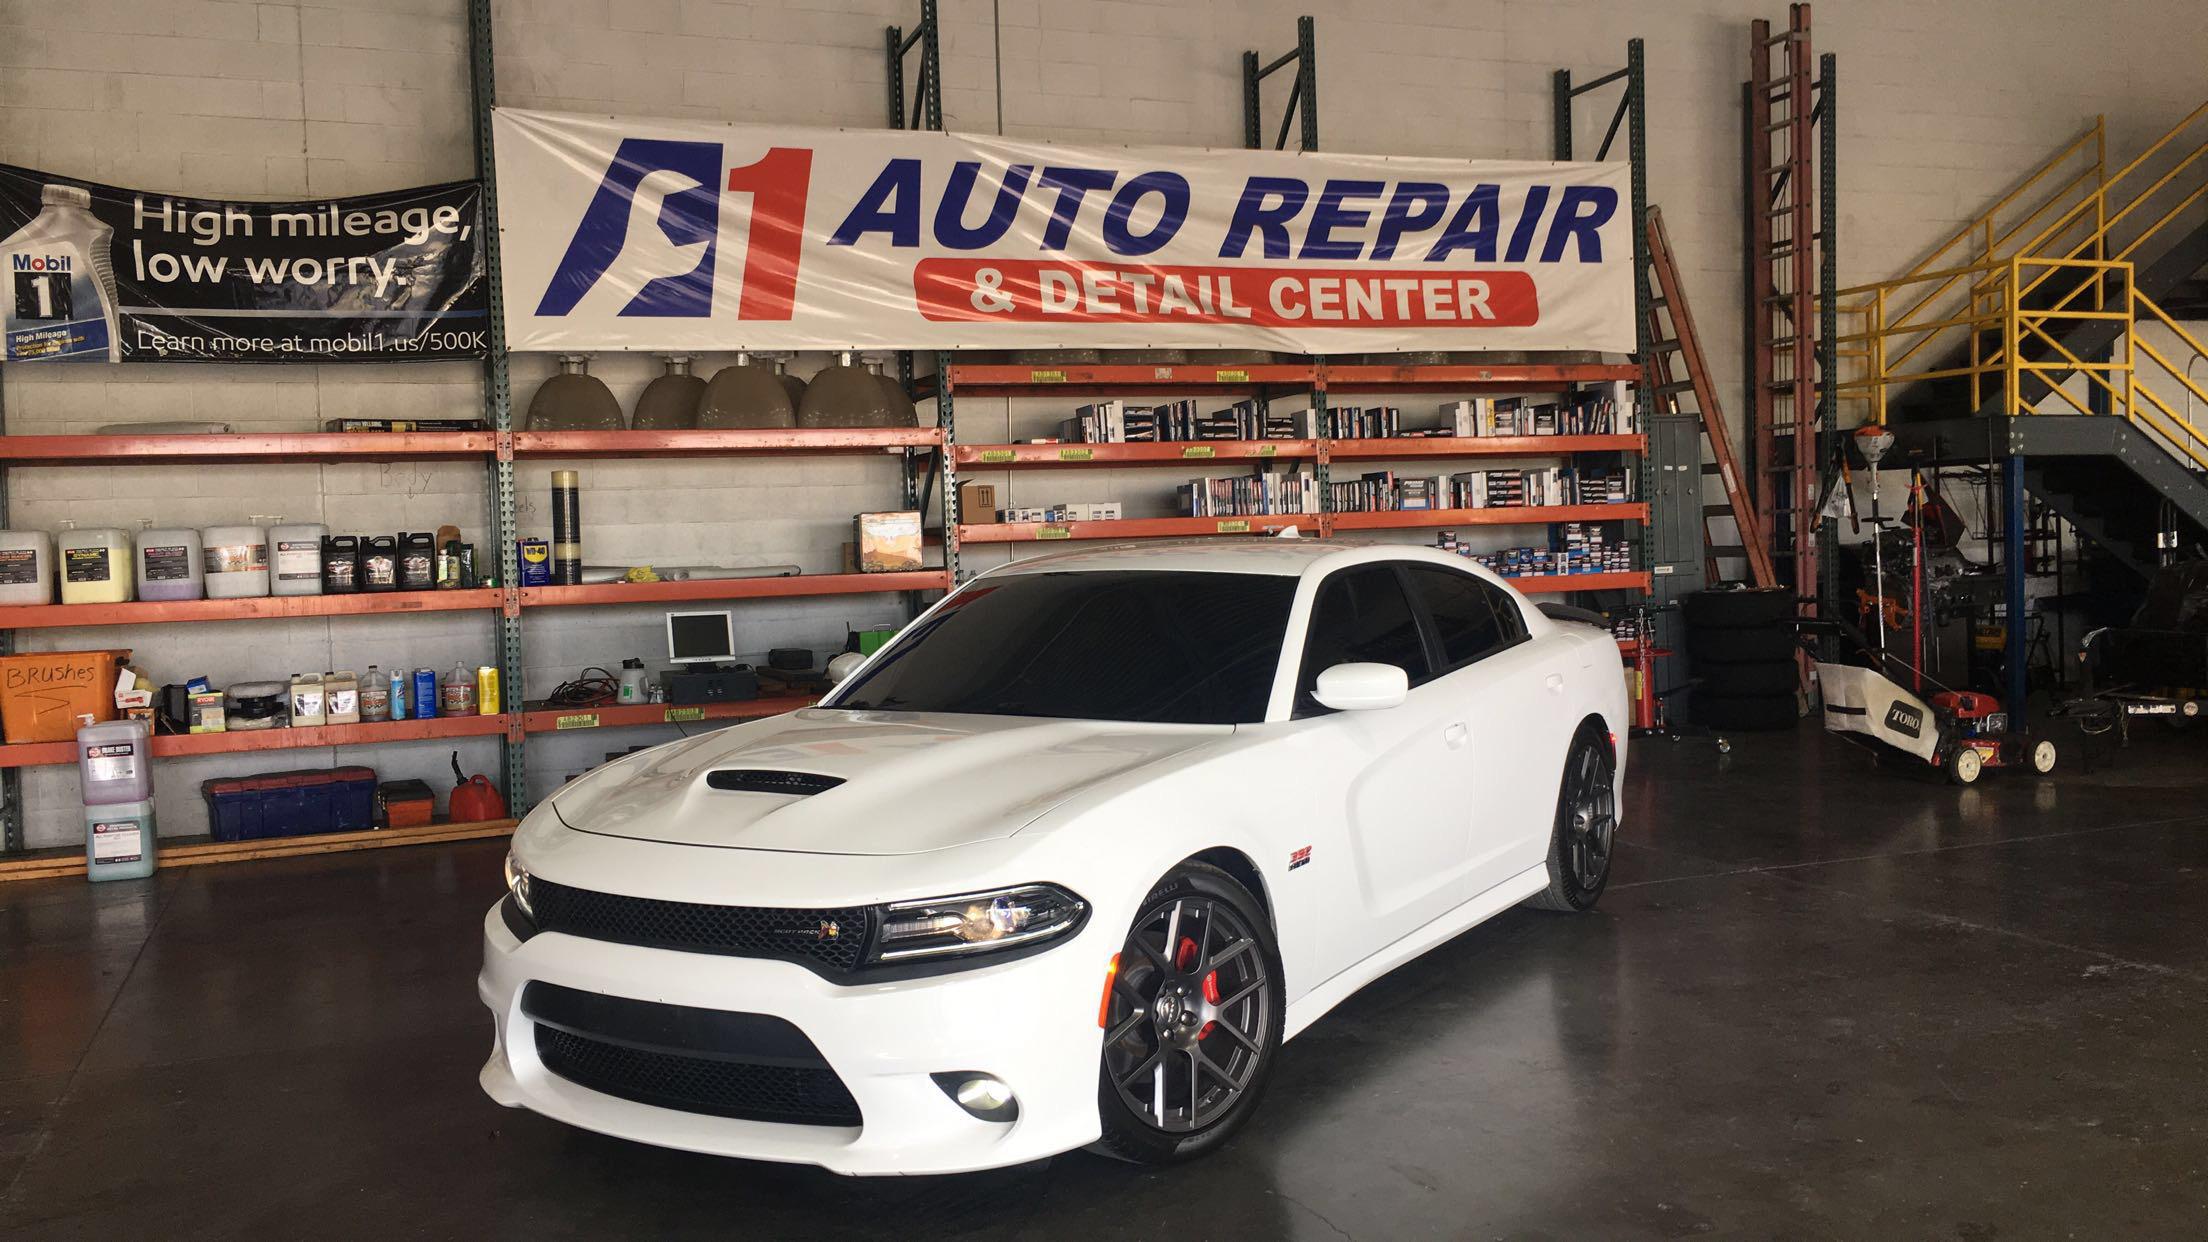 A1 Auto Repair & Detail Center Photo